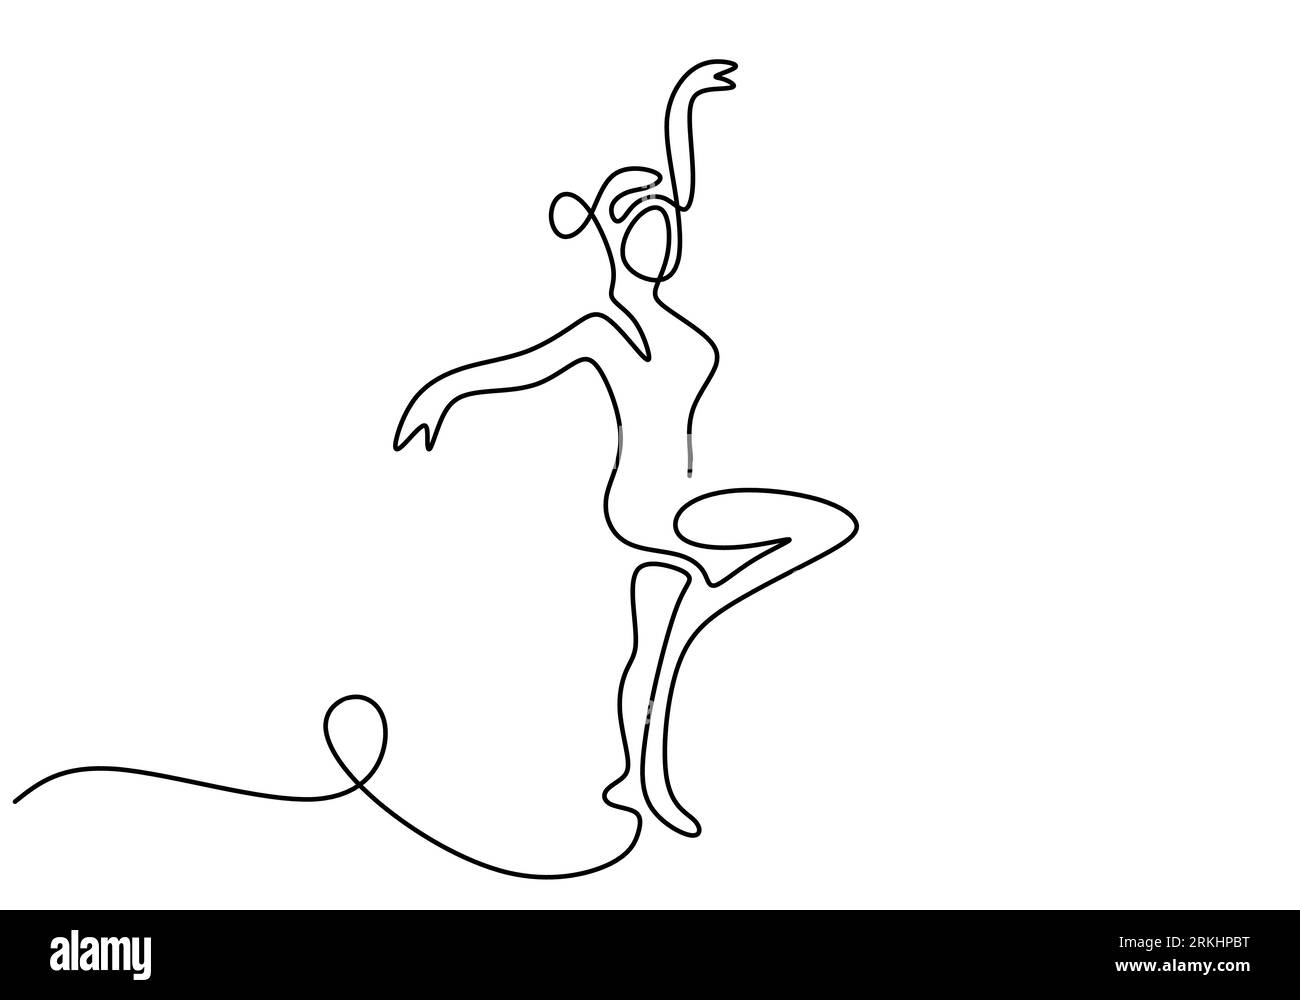 Una linea continua disegnando bella ballerina donna che indossa la maschera  facciale. Minimalista, graziosa ballerina di danza, concetto di movimento  di danza isolato su b bianco Immagine e Vettoriale - Alamy